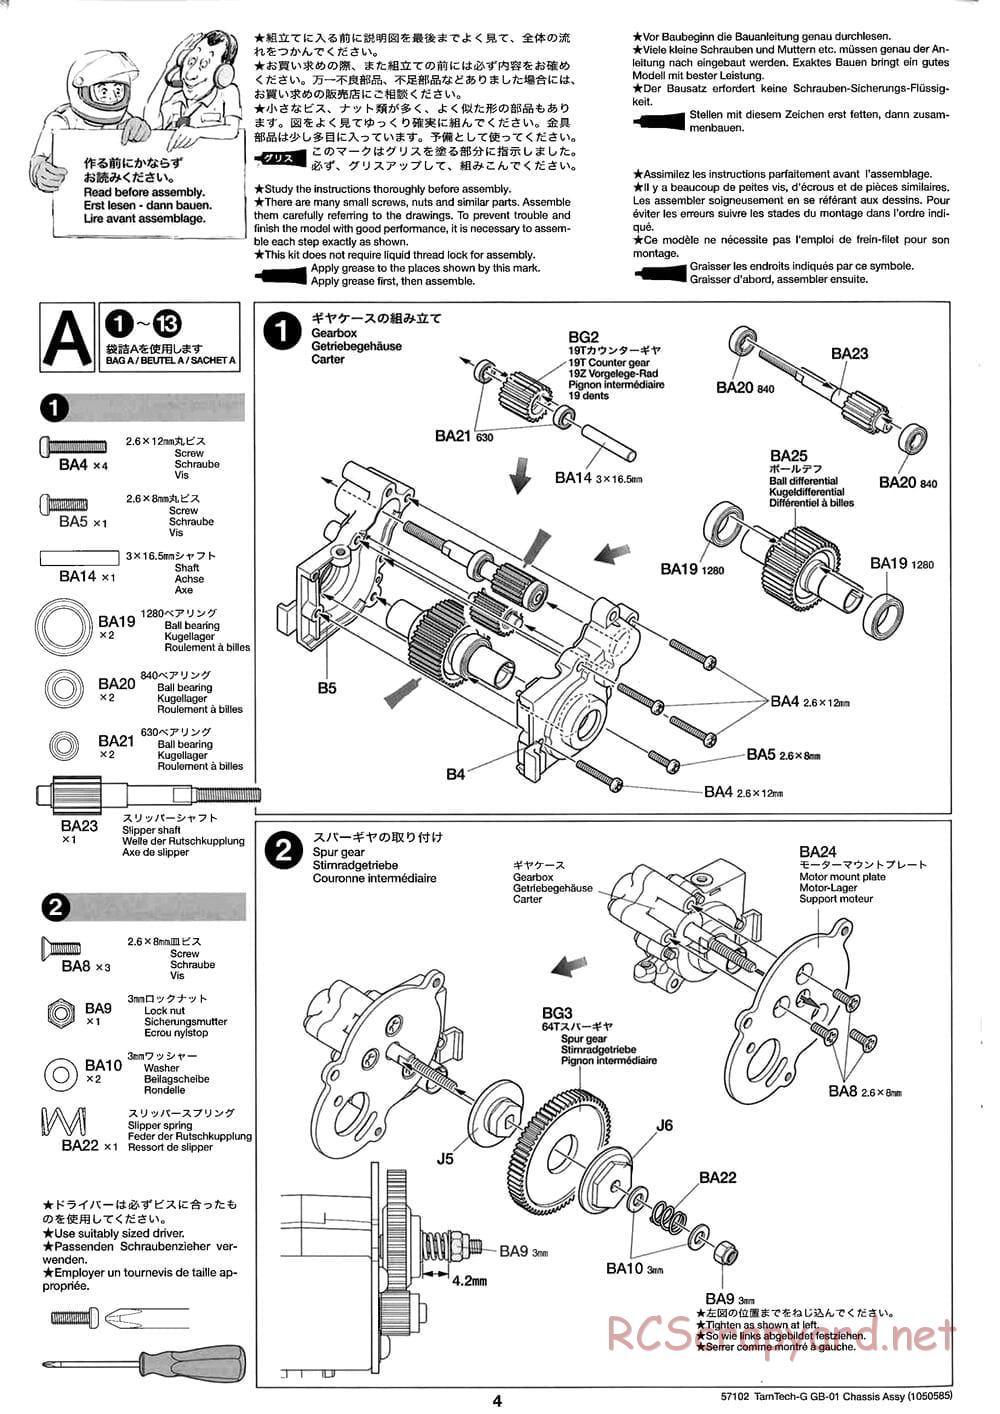 Tamiya - GB-01 Chassis - Manual - Page 4